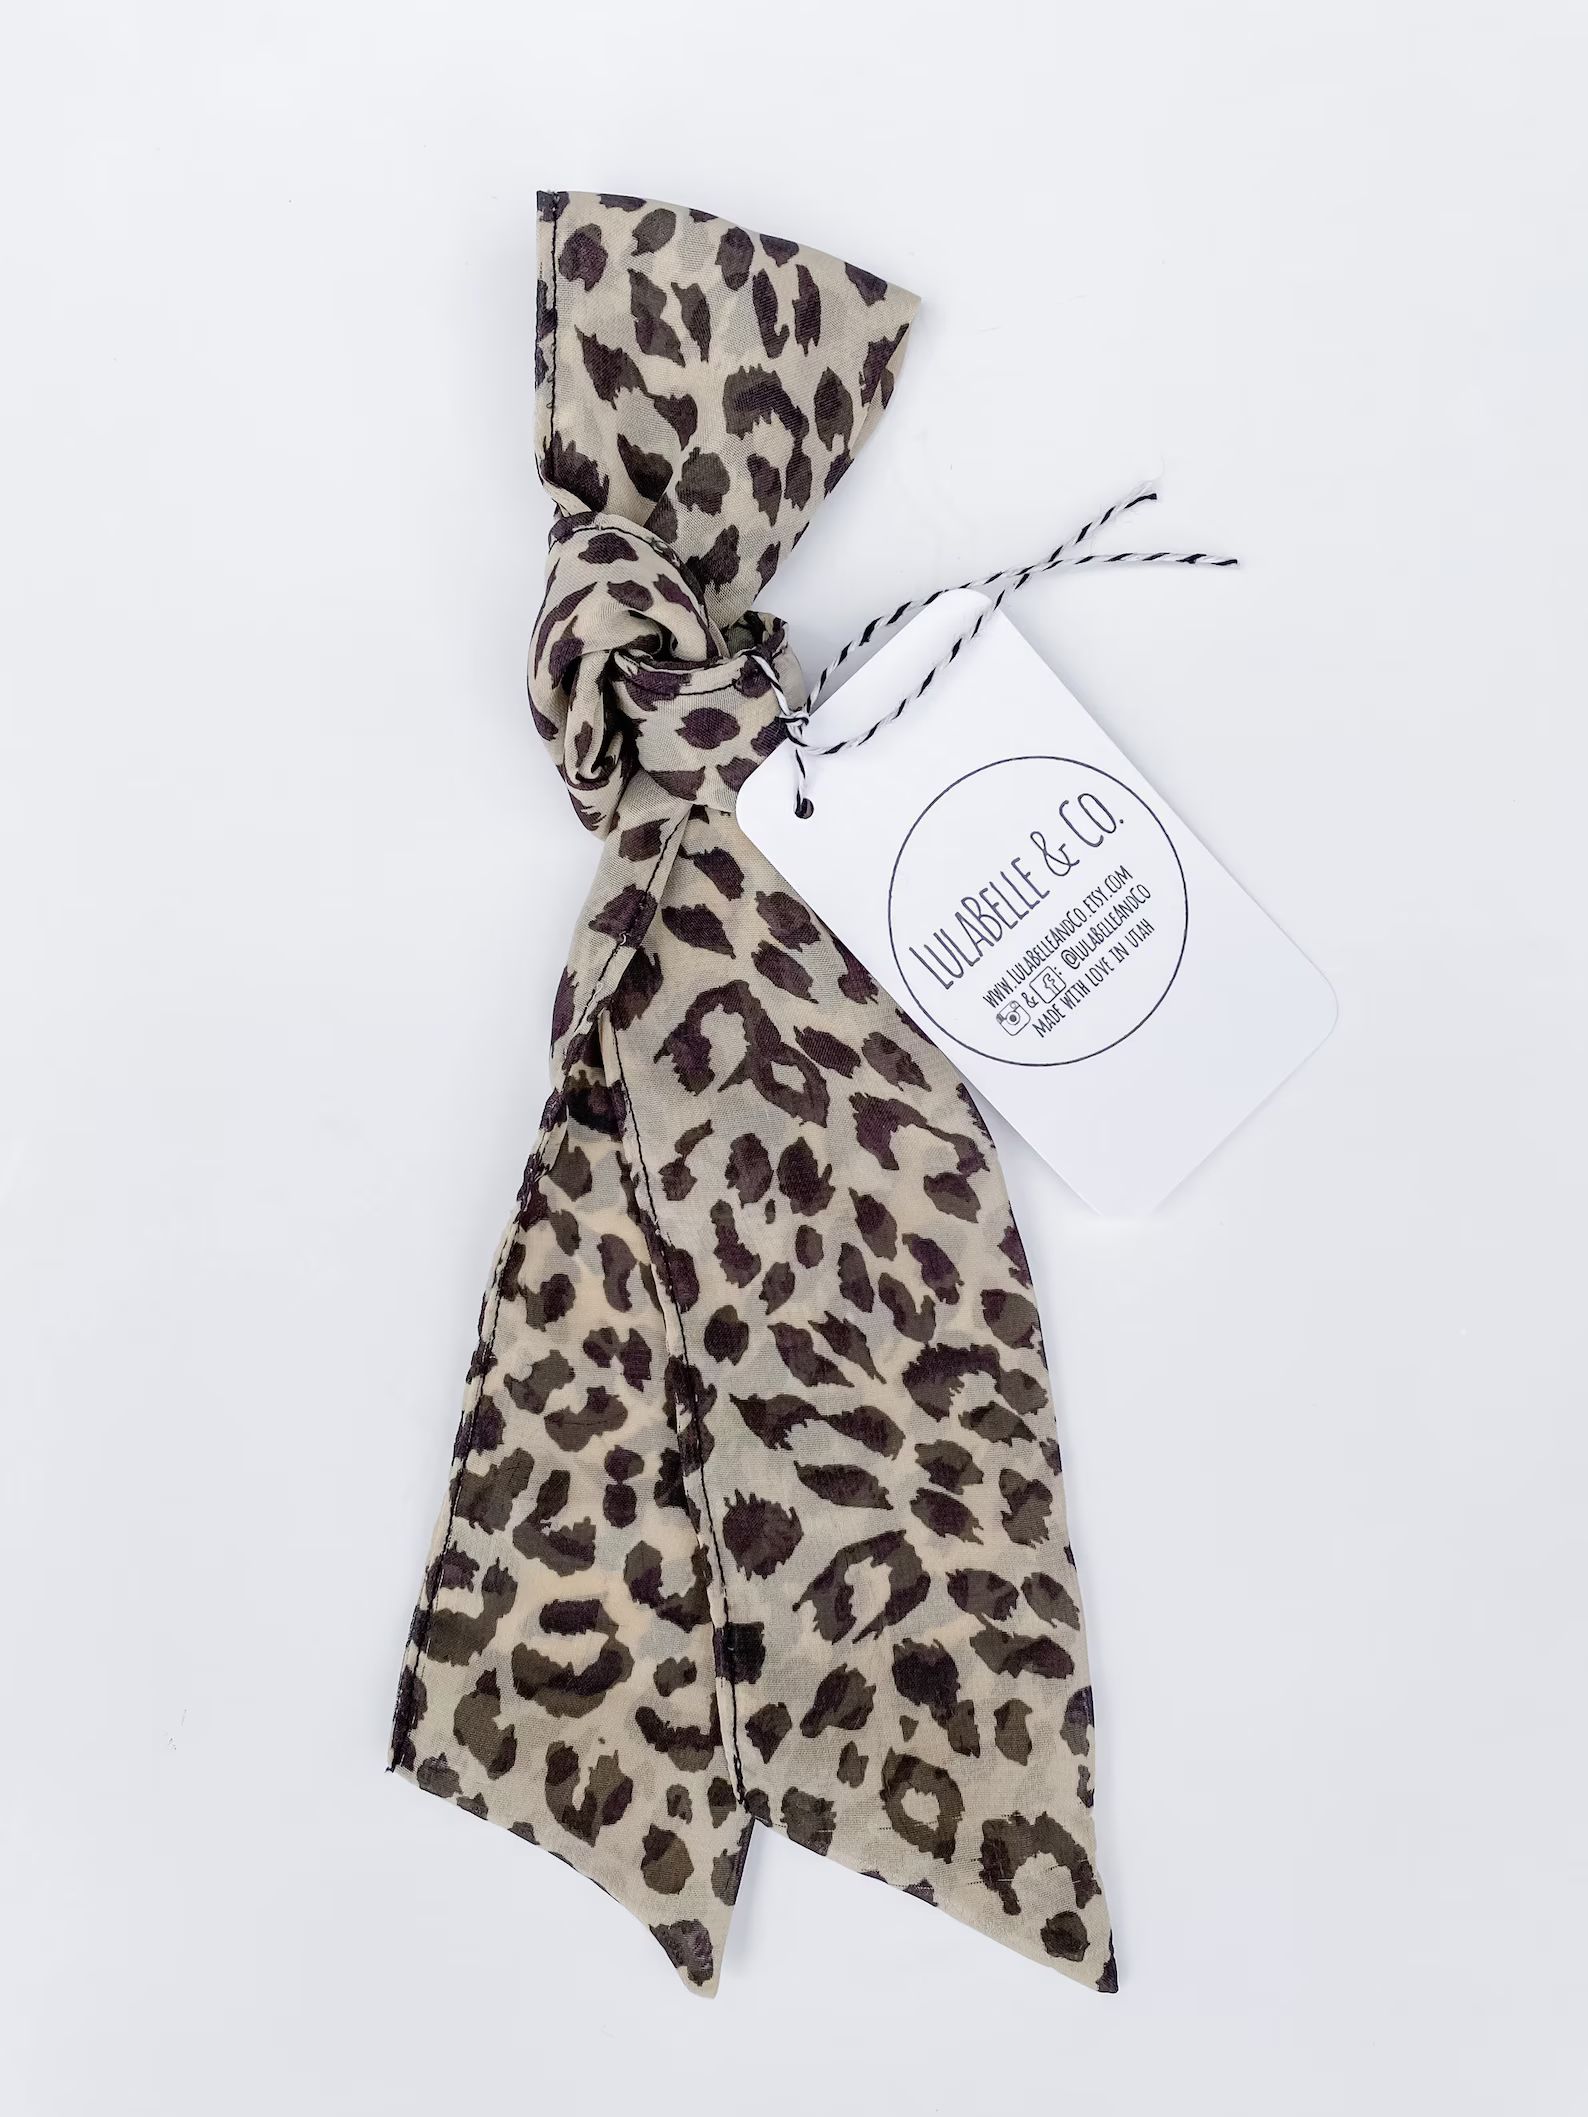 Hair Scarf / Sheer Leopard / Tan Beige Cream Cheetah Animal Print / Head Scarf / Hair Wrap / Scar... | Etsy (US)